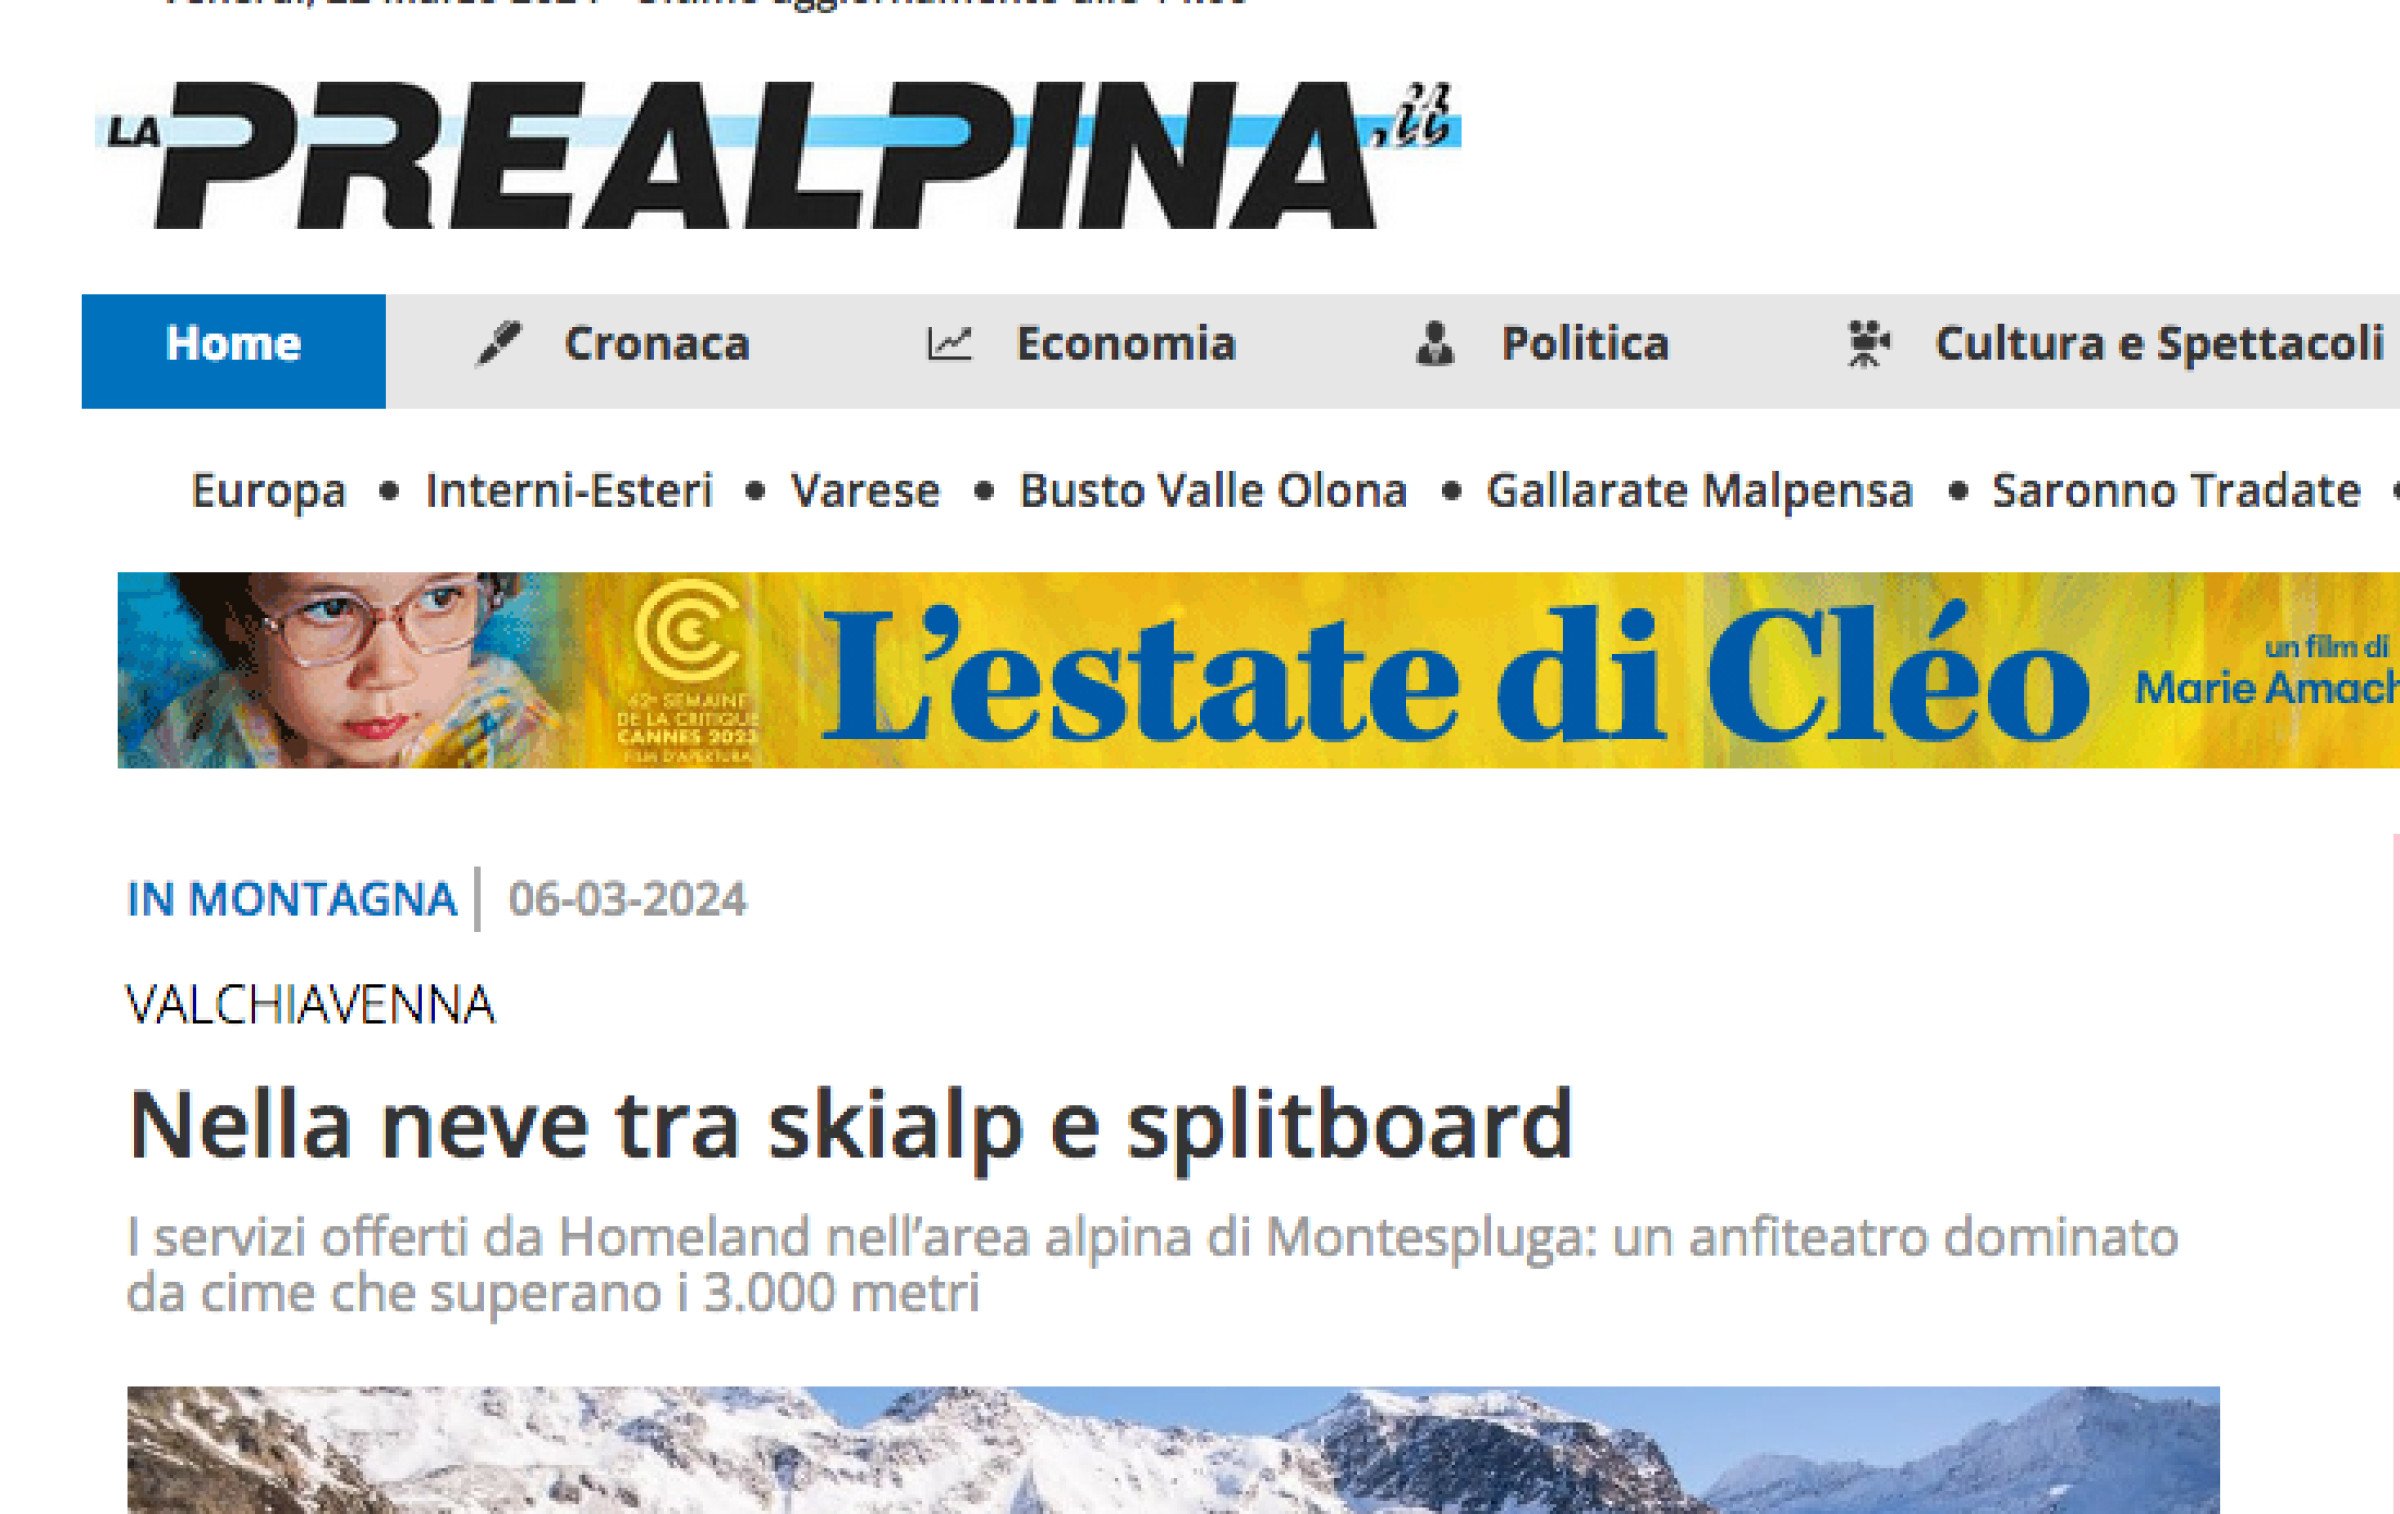 Il sito "La prealpina .it" dedica un articolo a Homeland